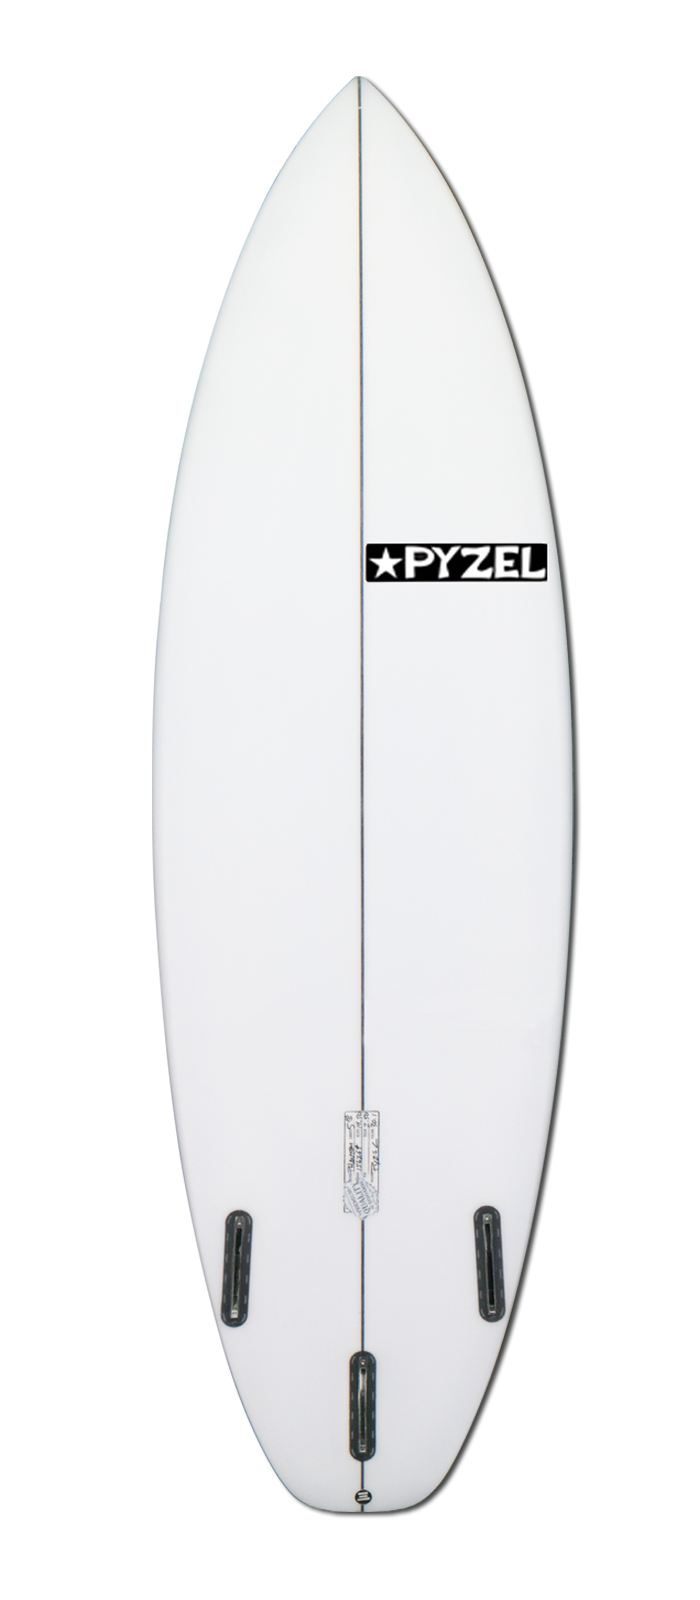 最適な価格 Surf bordos Hawaii サーフボード額 サーフィン 